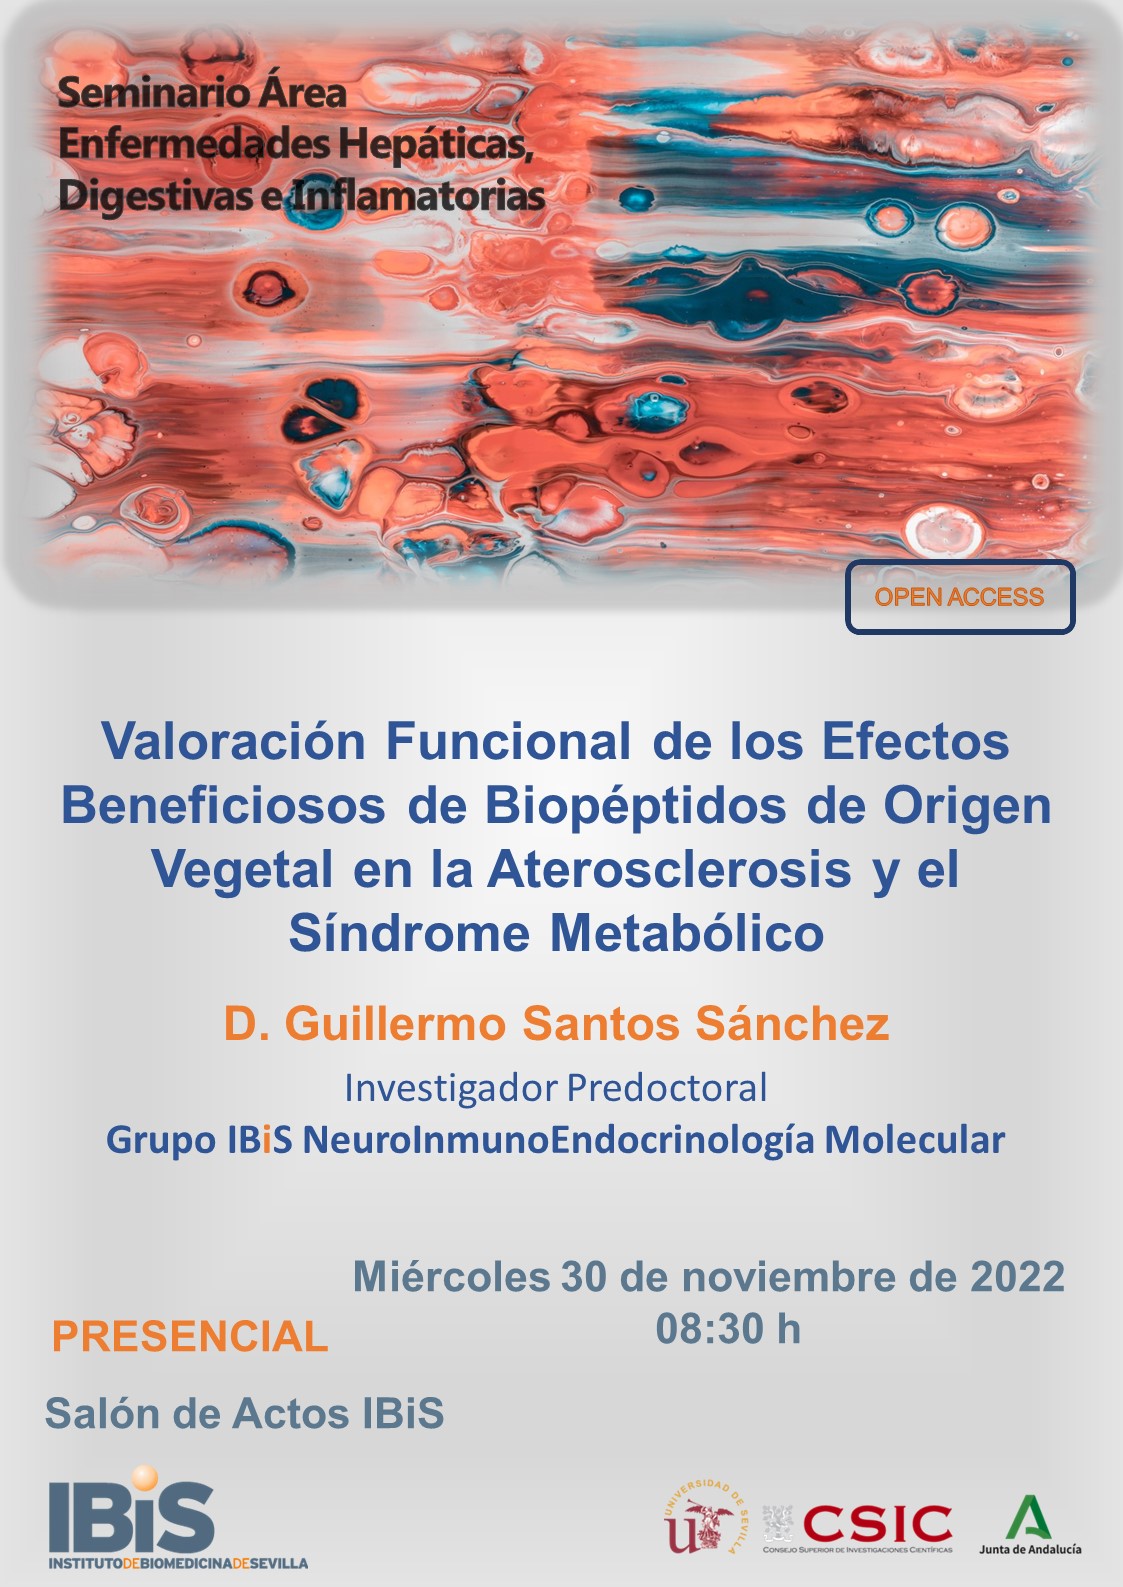 Poster: Valoración Funcional de los Efectos Beneficiosos de Biopéptidos de Origen Vegetal en la Aterosclerosis y el Síndrome Metabólico